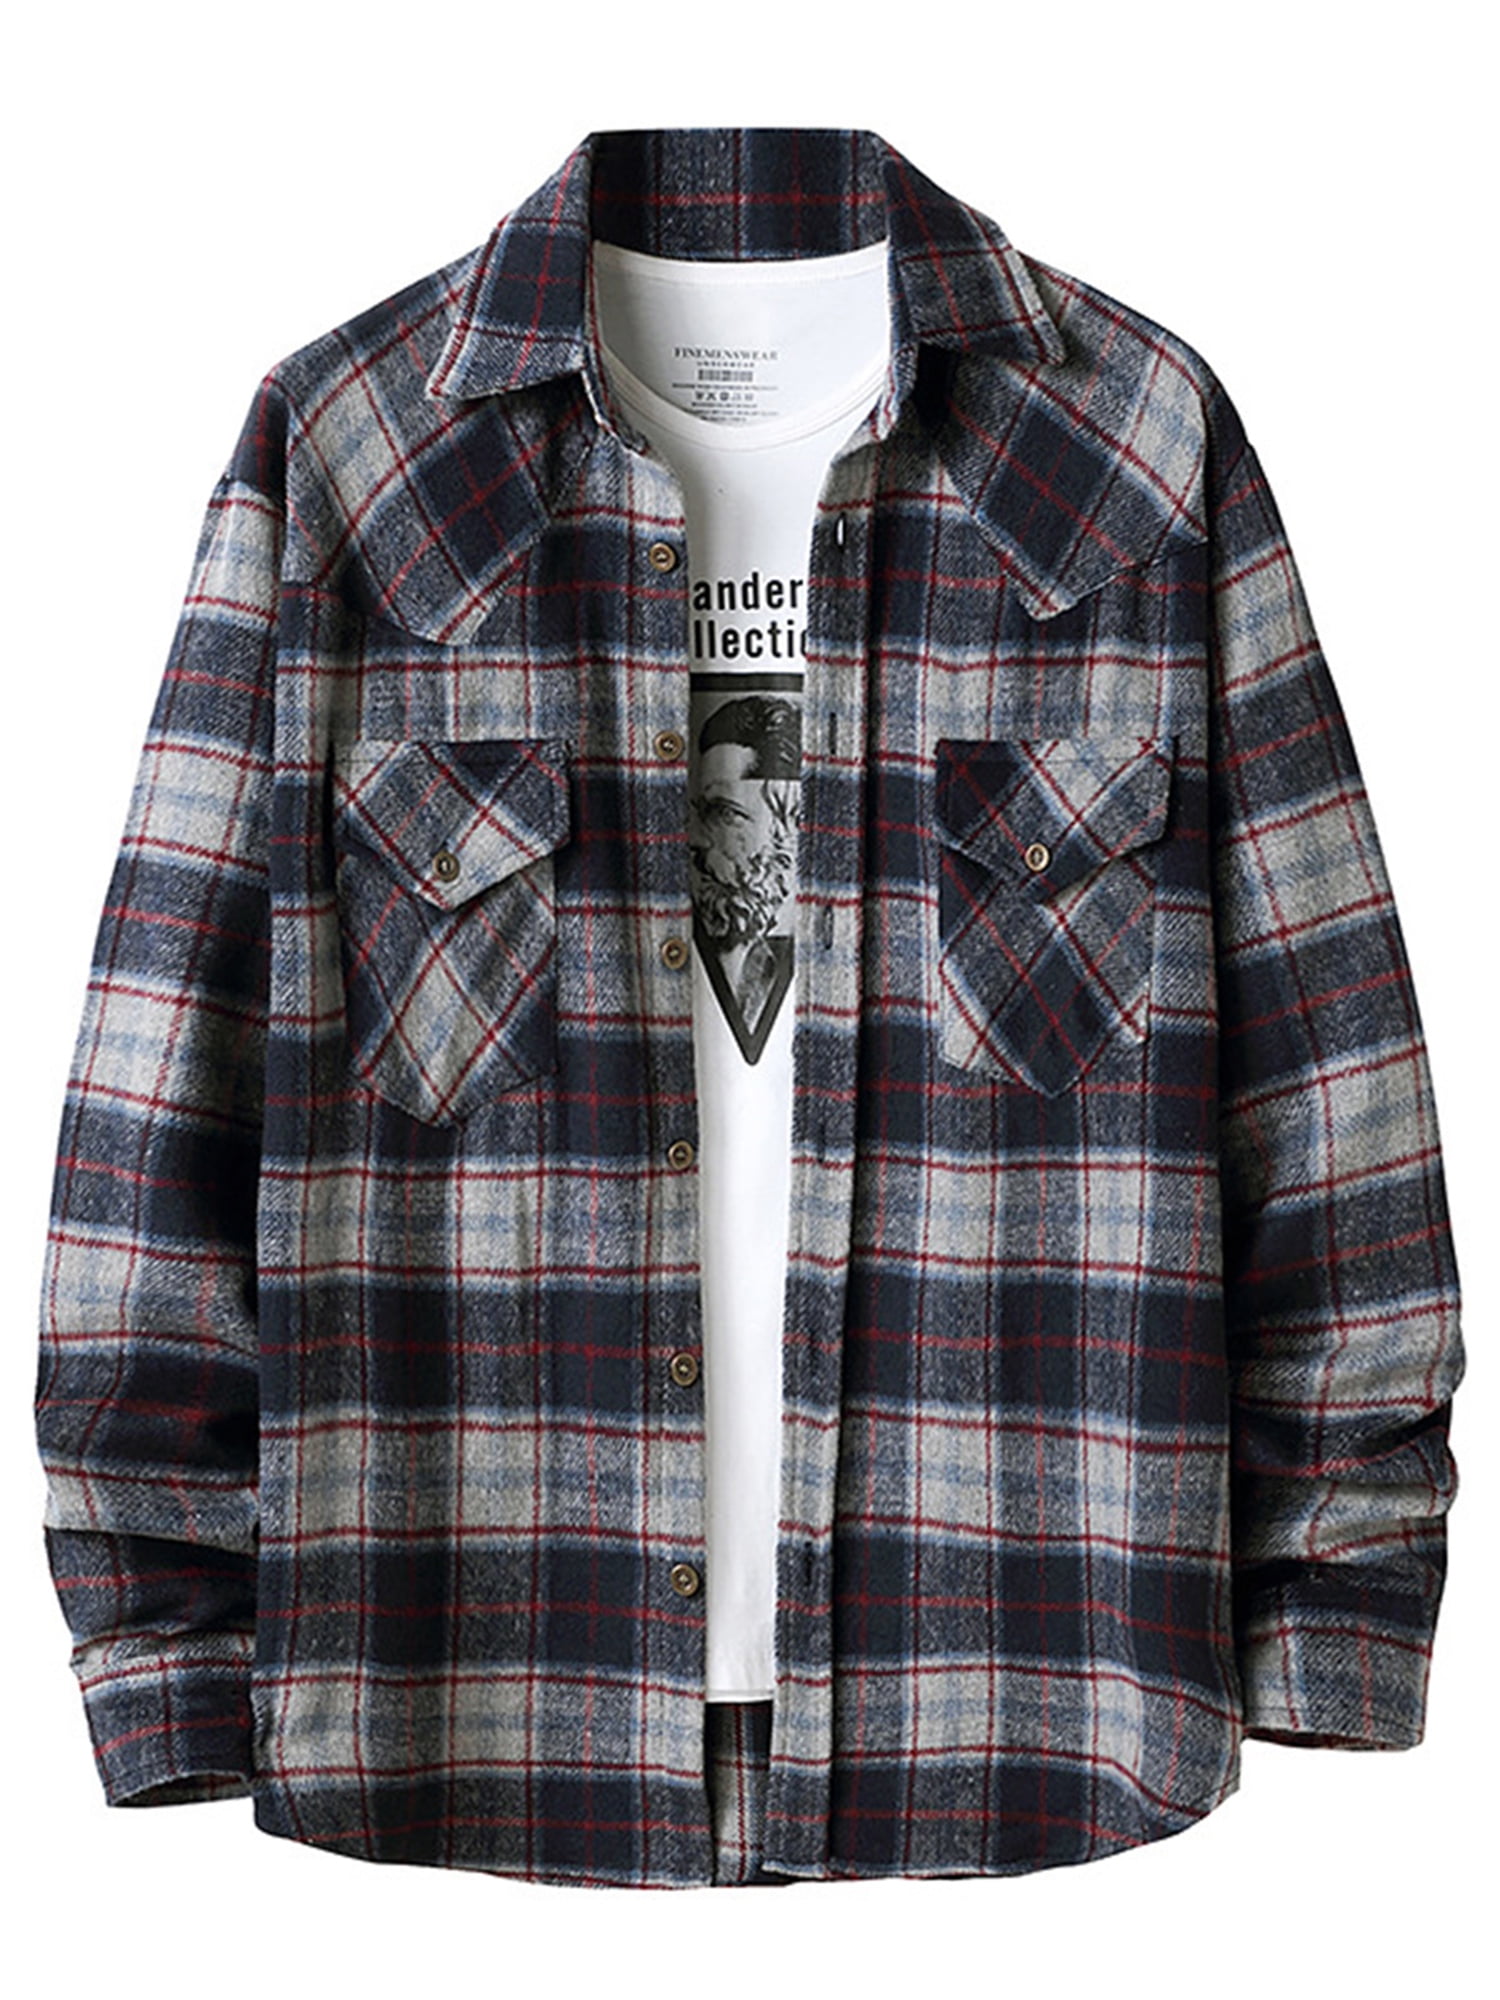 Men’s Plaid Jacket Lapel Button Flannel Long Sleeve Shirt Coat with ...